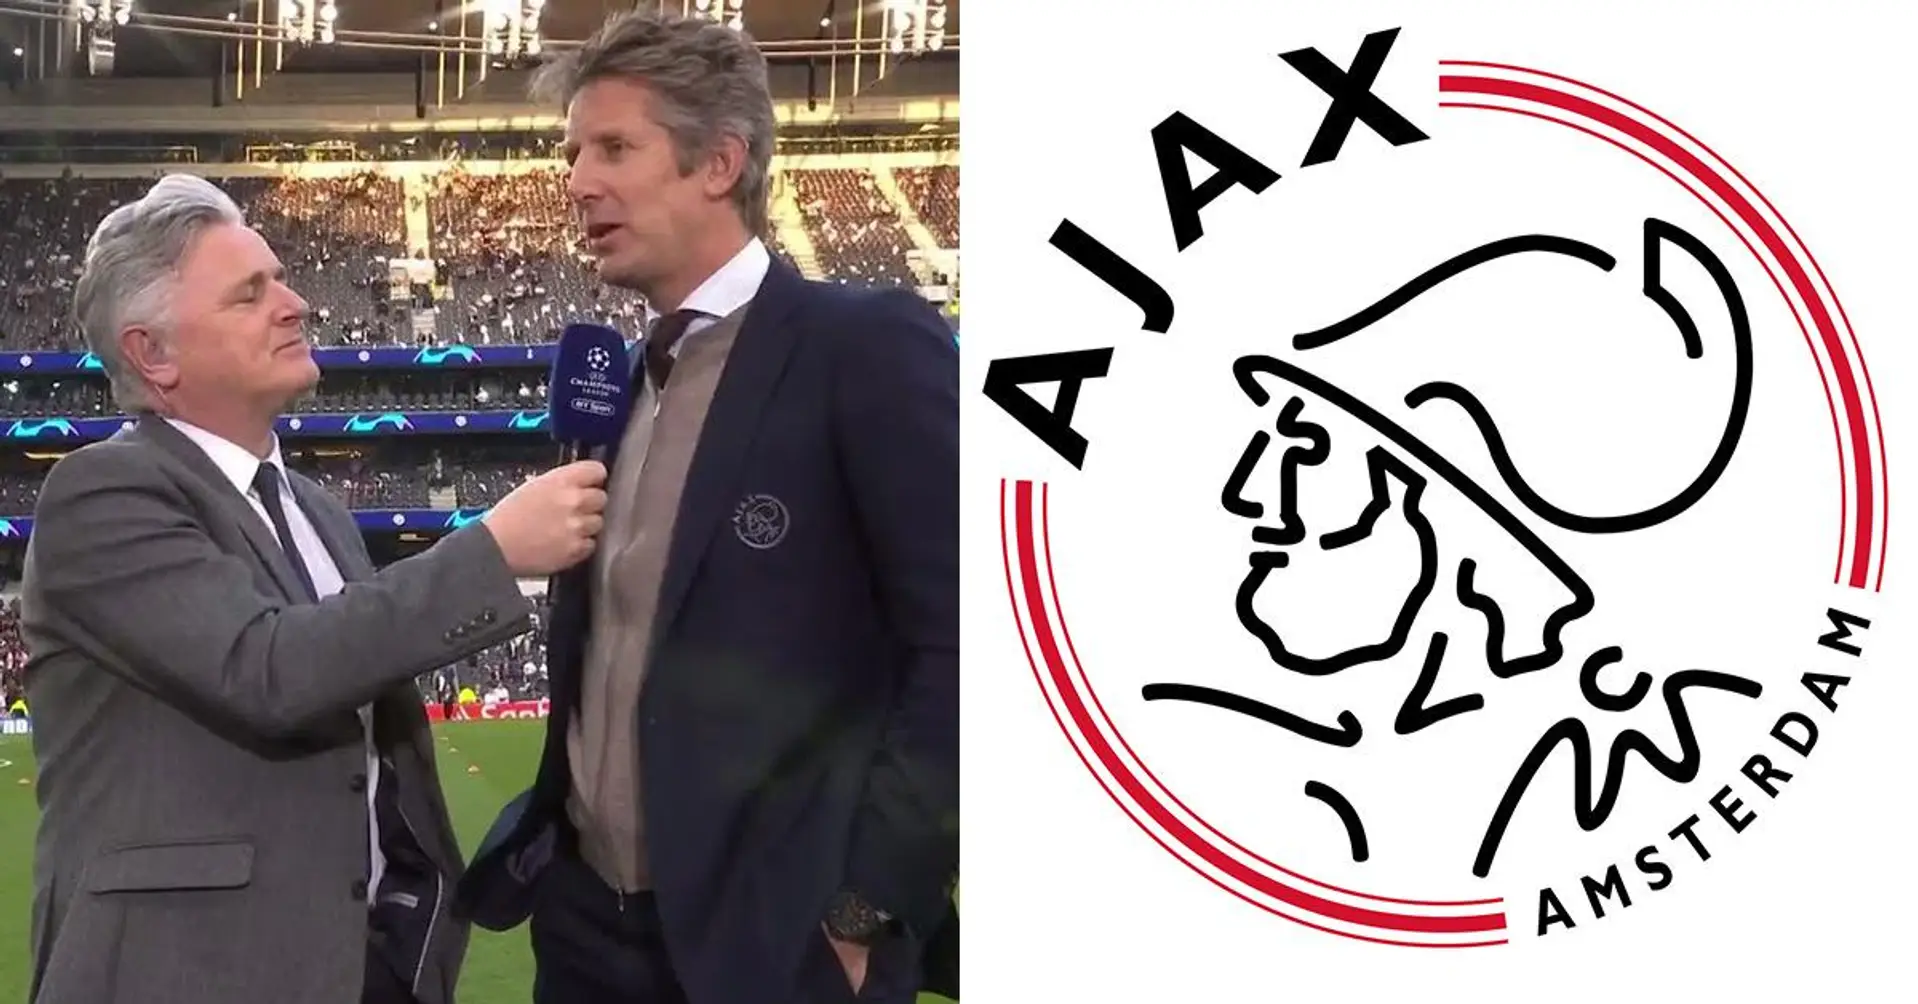 Der niederländische Top-Klub Ajax veröffentlicht eine offizielle Erklärung zur European Super League